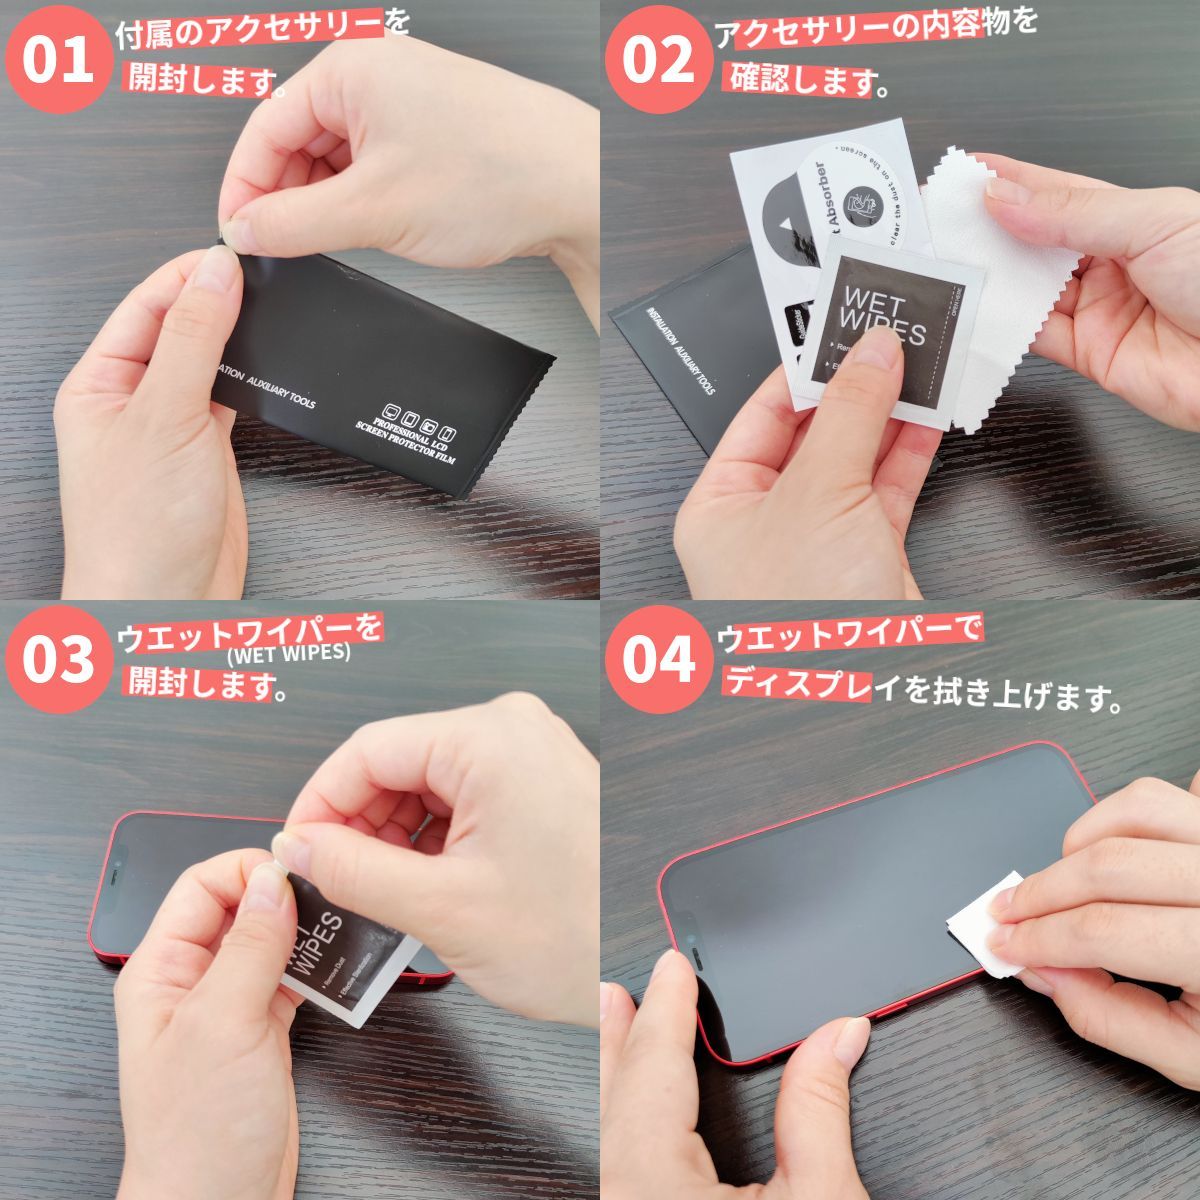 新品未使用正規品 限定特価 iPhone 12 mini 全面保護 旭硝子 超強化ガラスフィルム